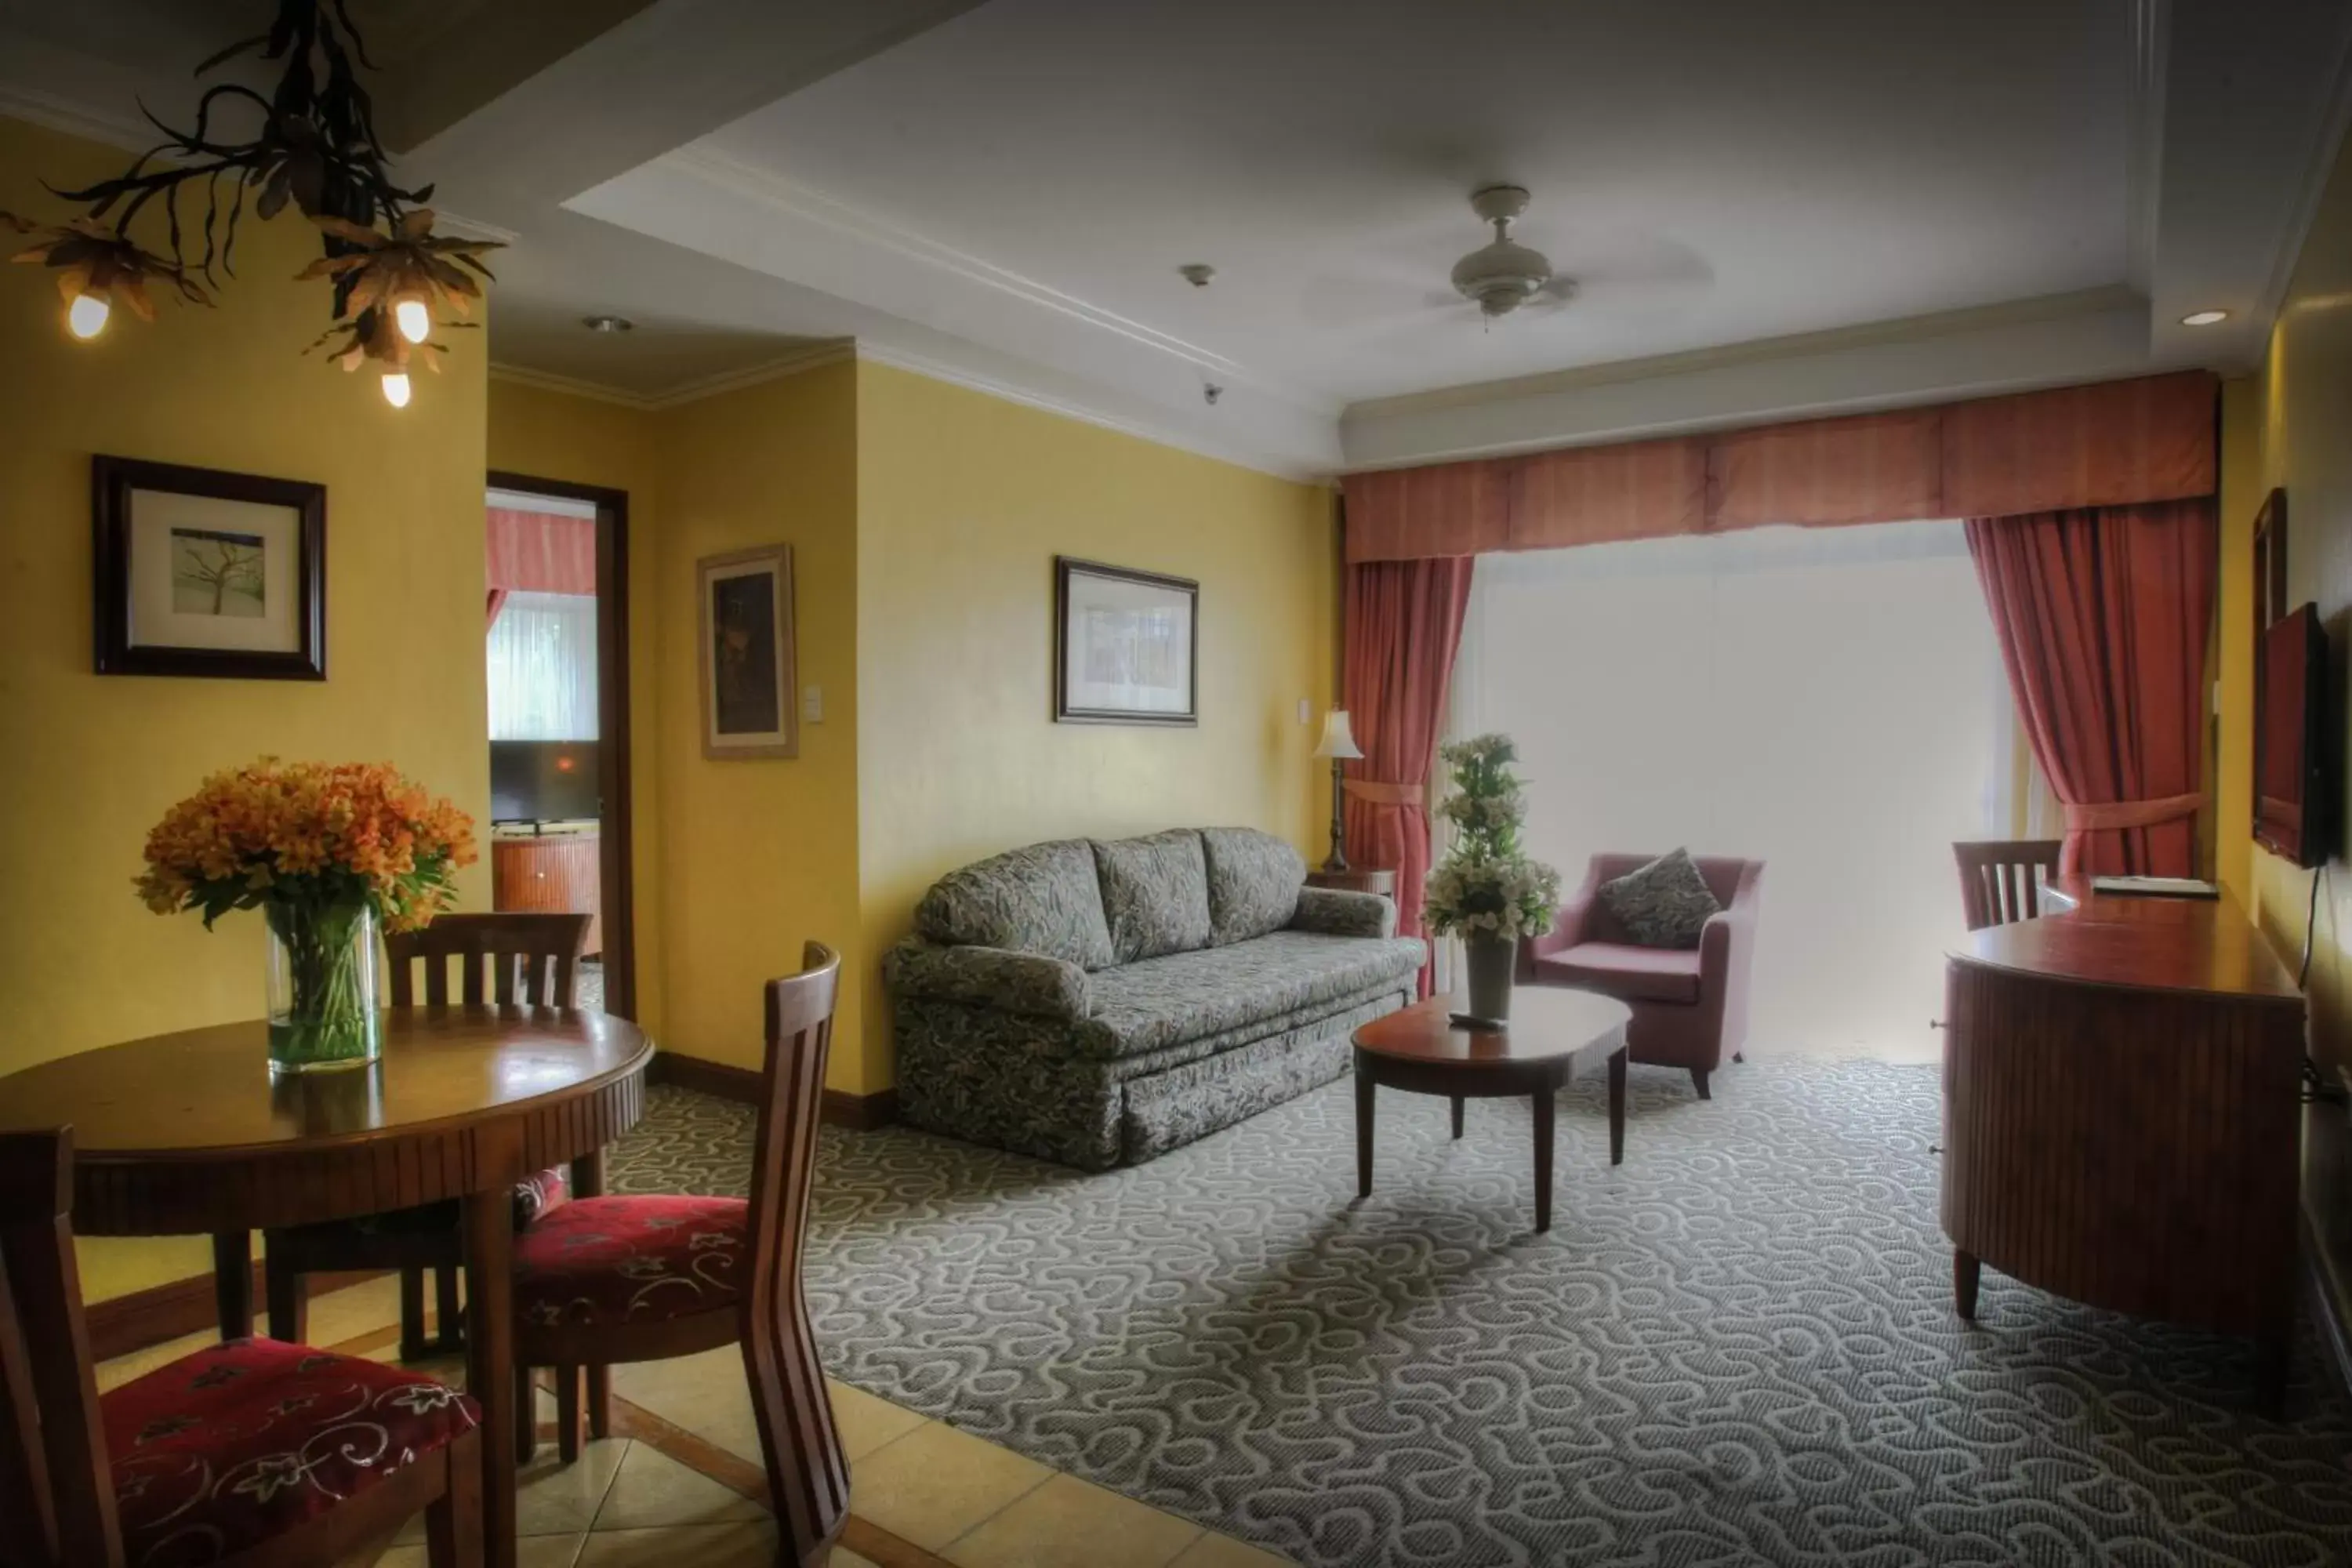 Executive Suite in Hotel Elizabeth - Baguio